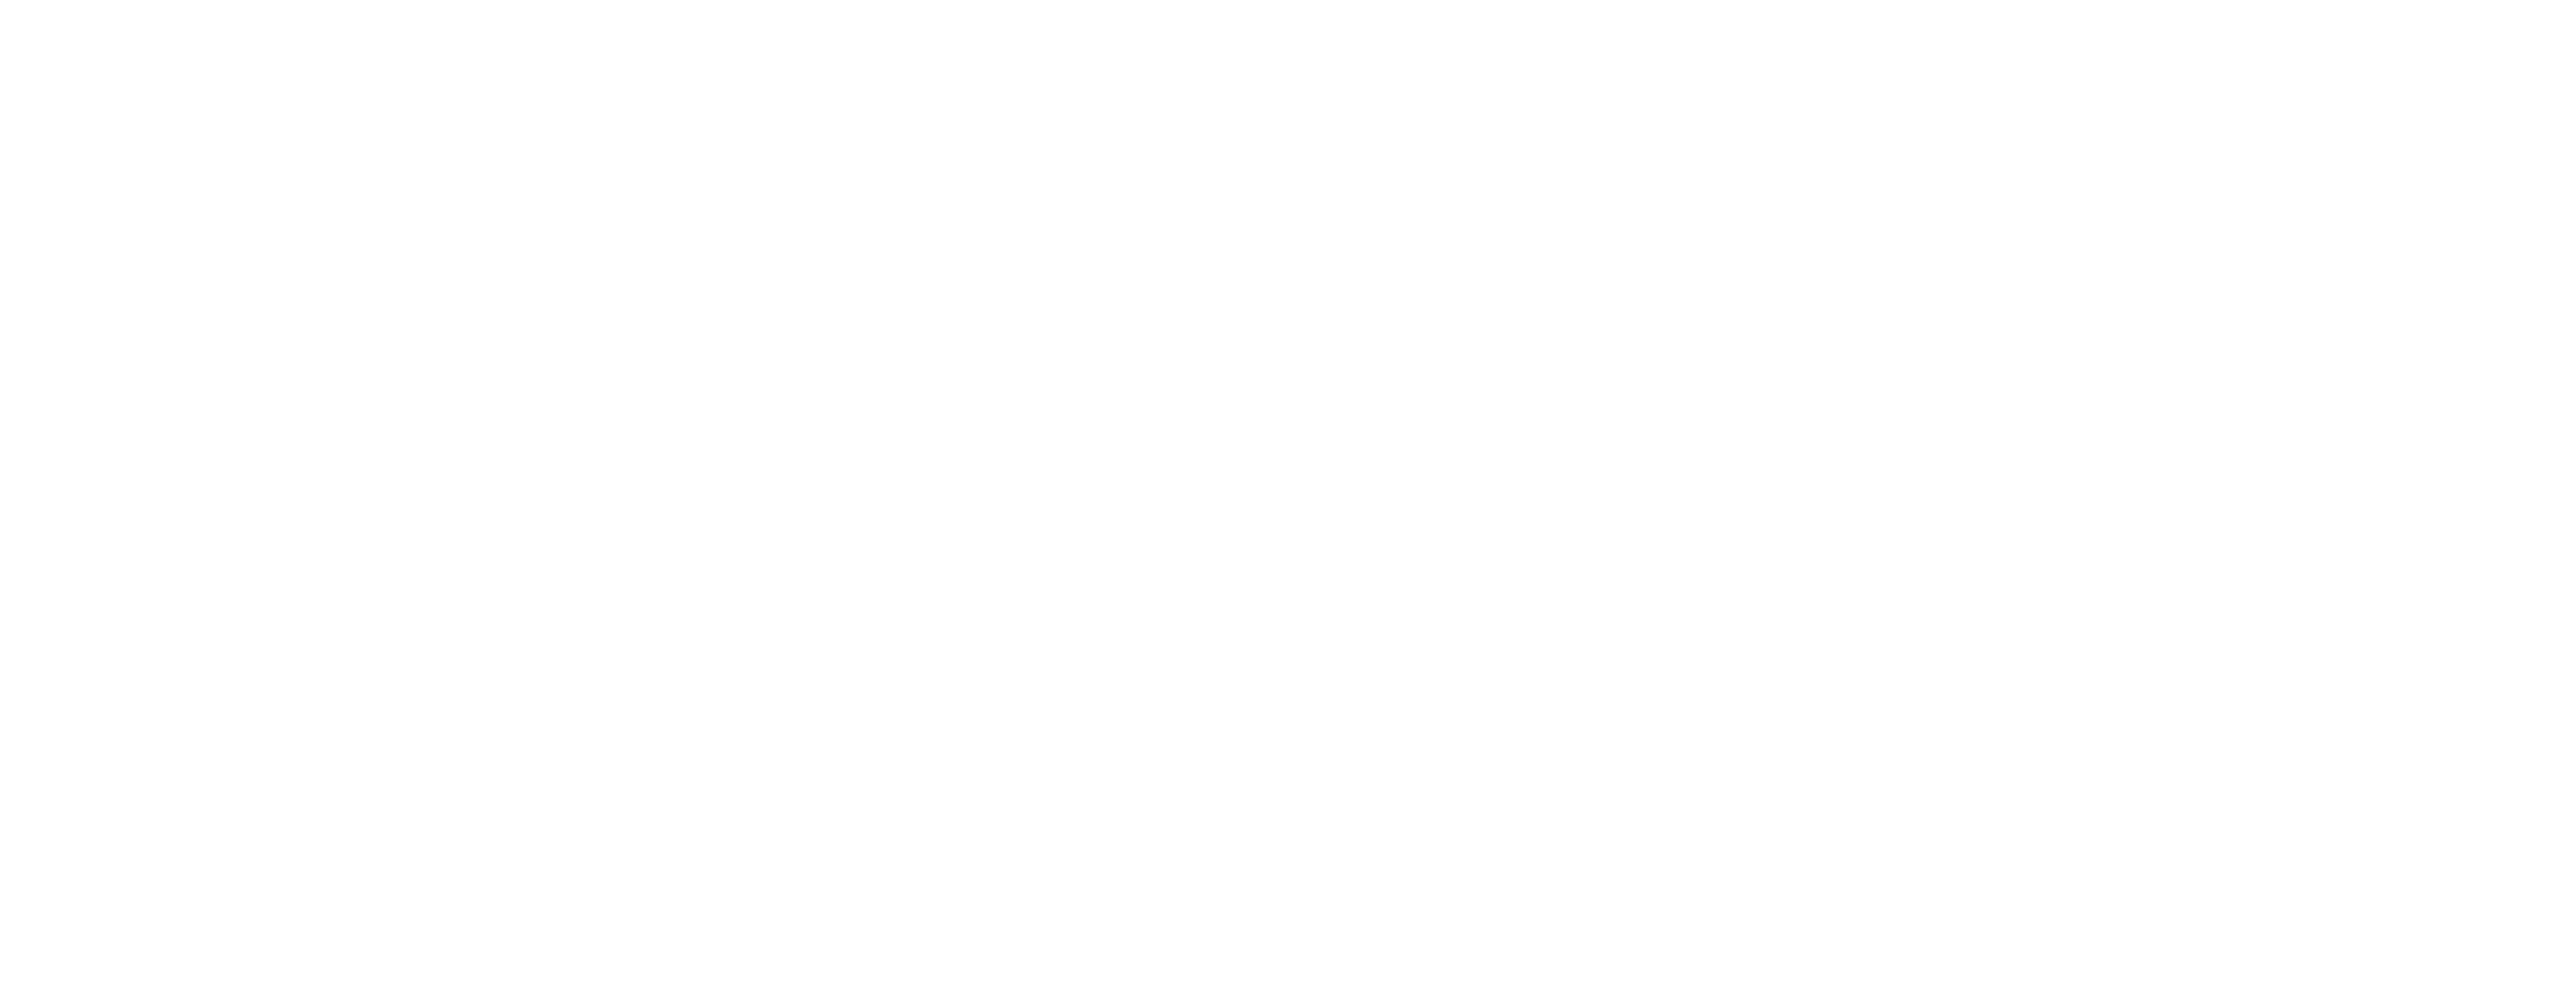 Landye Bennett Blumstein, LLP logo